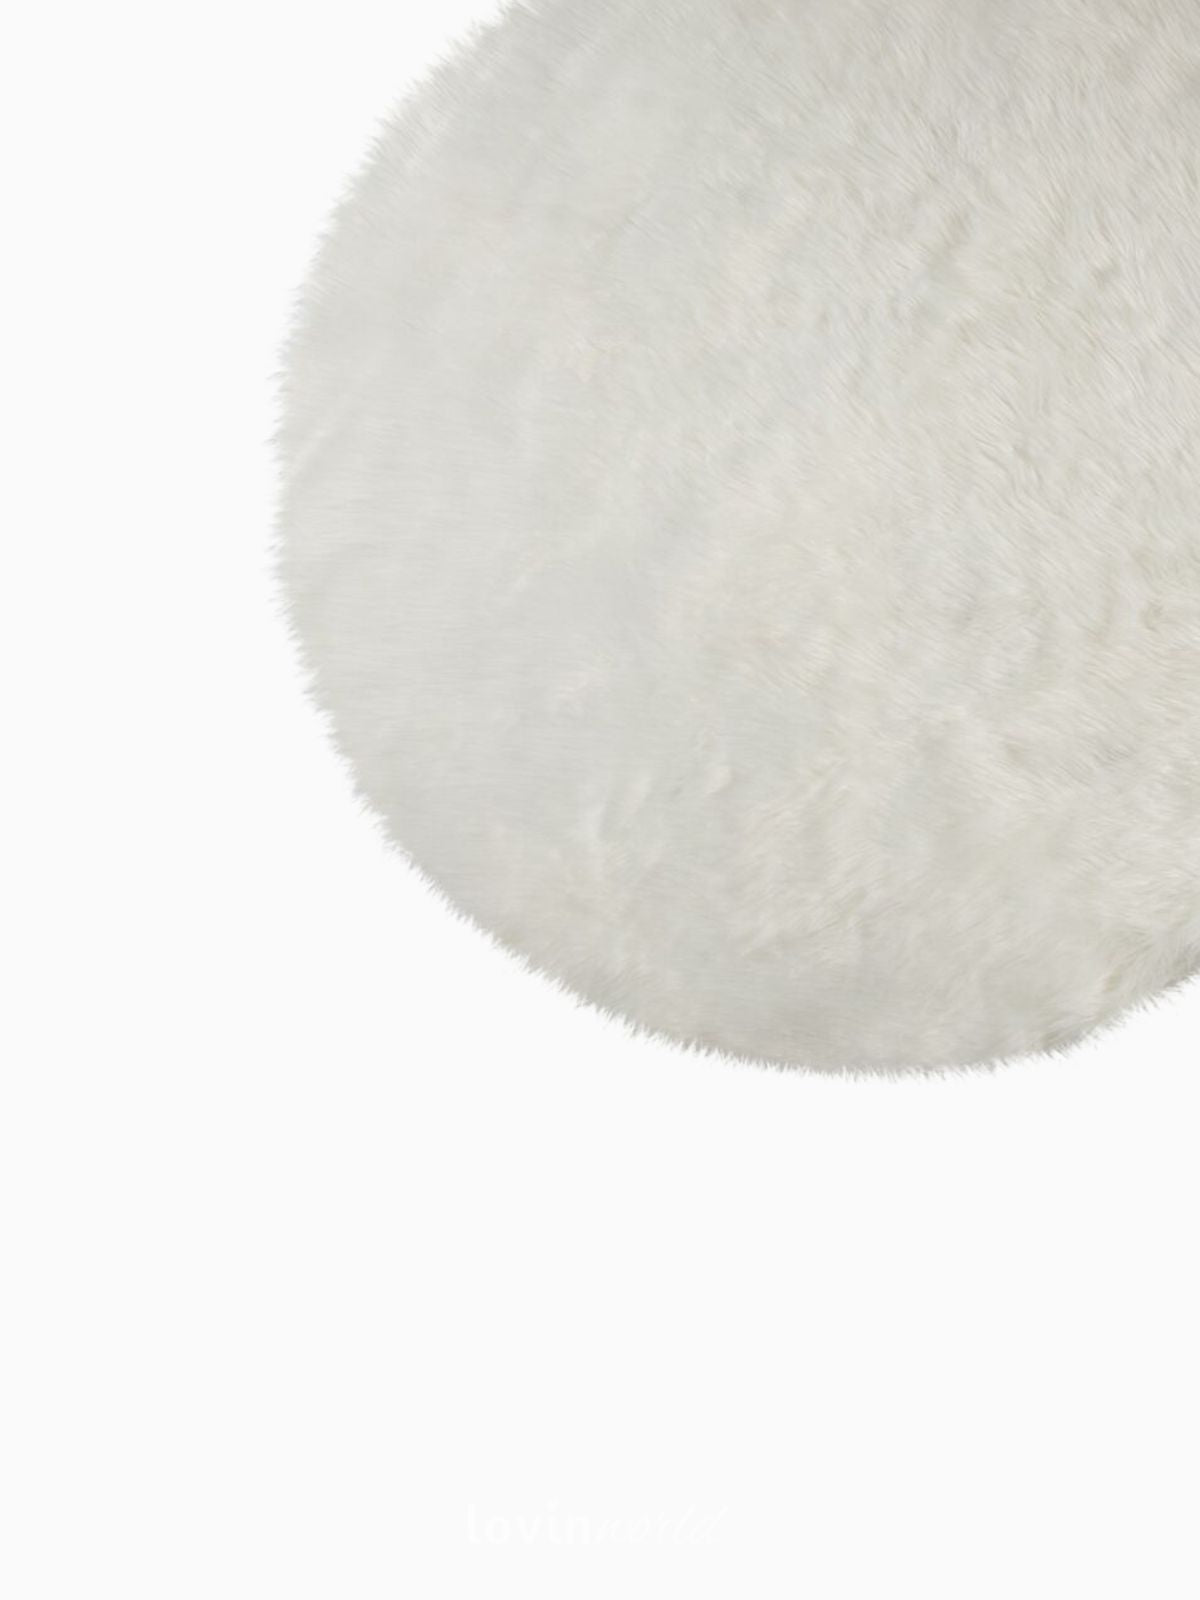 Tappeto rotondo shaggy Sheepskin in poliestere, colore avorio 120x120 cm.-4